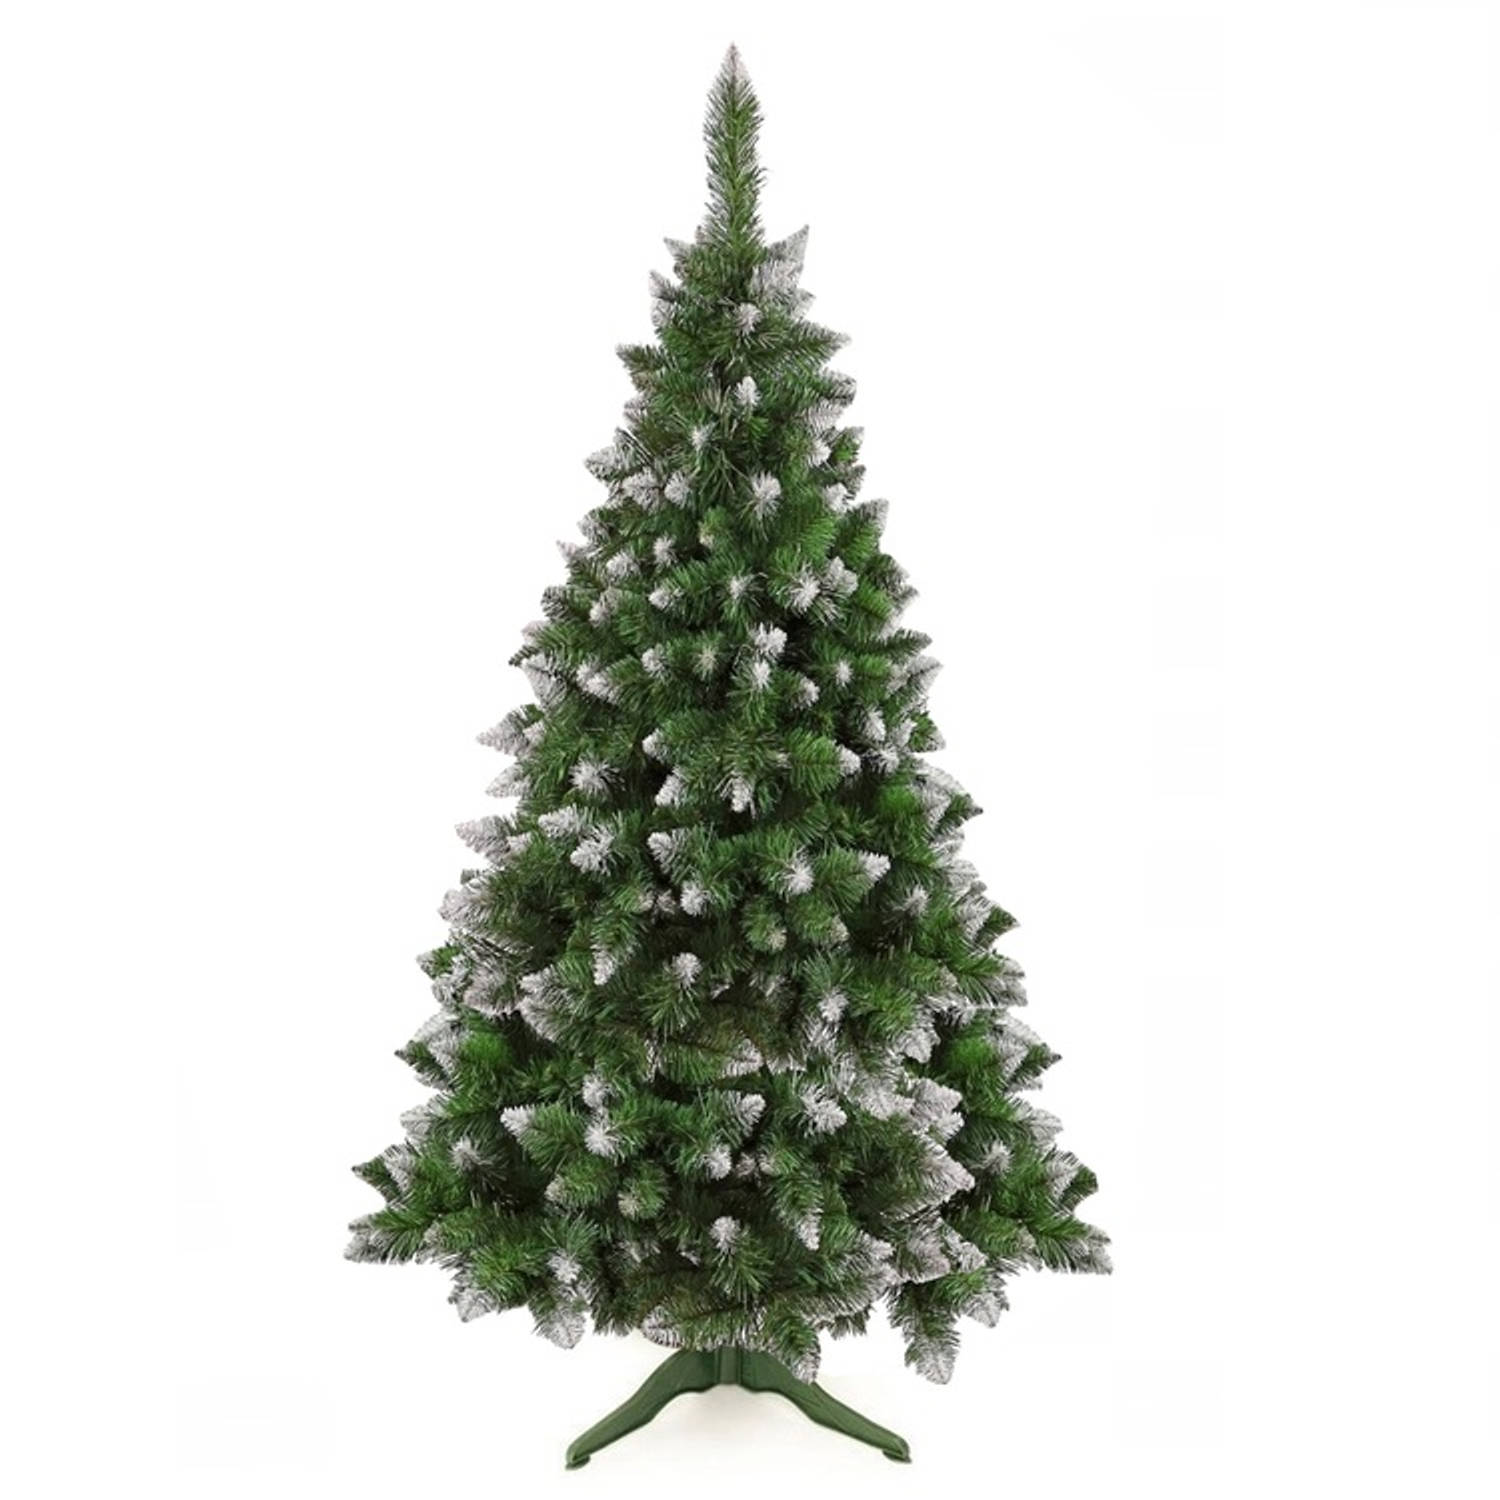 Diamond Kunstkerstboom 250 cm grenen pine besneeuwde takken en glitters - eenvoudige opbouw zonder gereedschap - onderhoudsvriendelijk en herbruikbaar - kunststof spar kerstboom